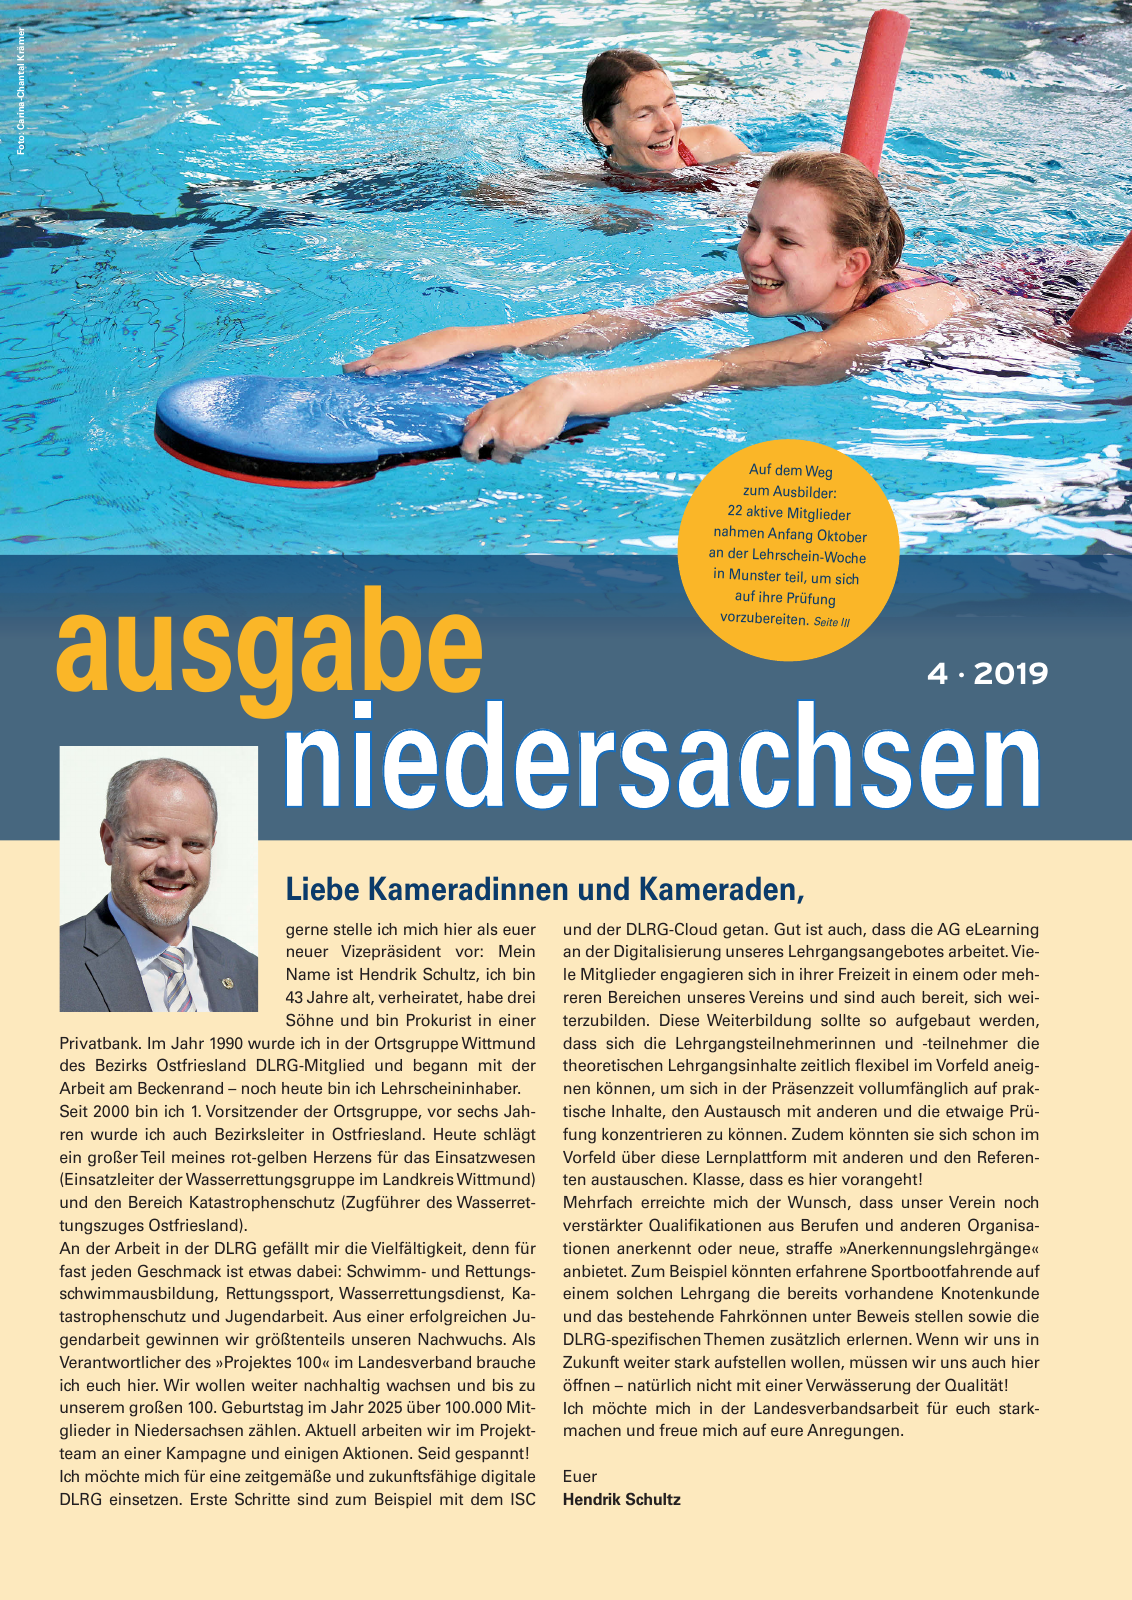 Vorschau Lebensretter 4/2019 -  Niedersachsen Regionalausgabe Seite 3